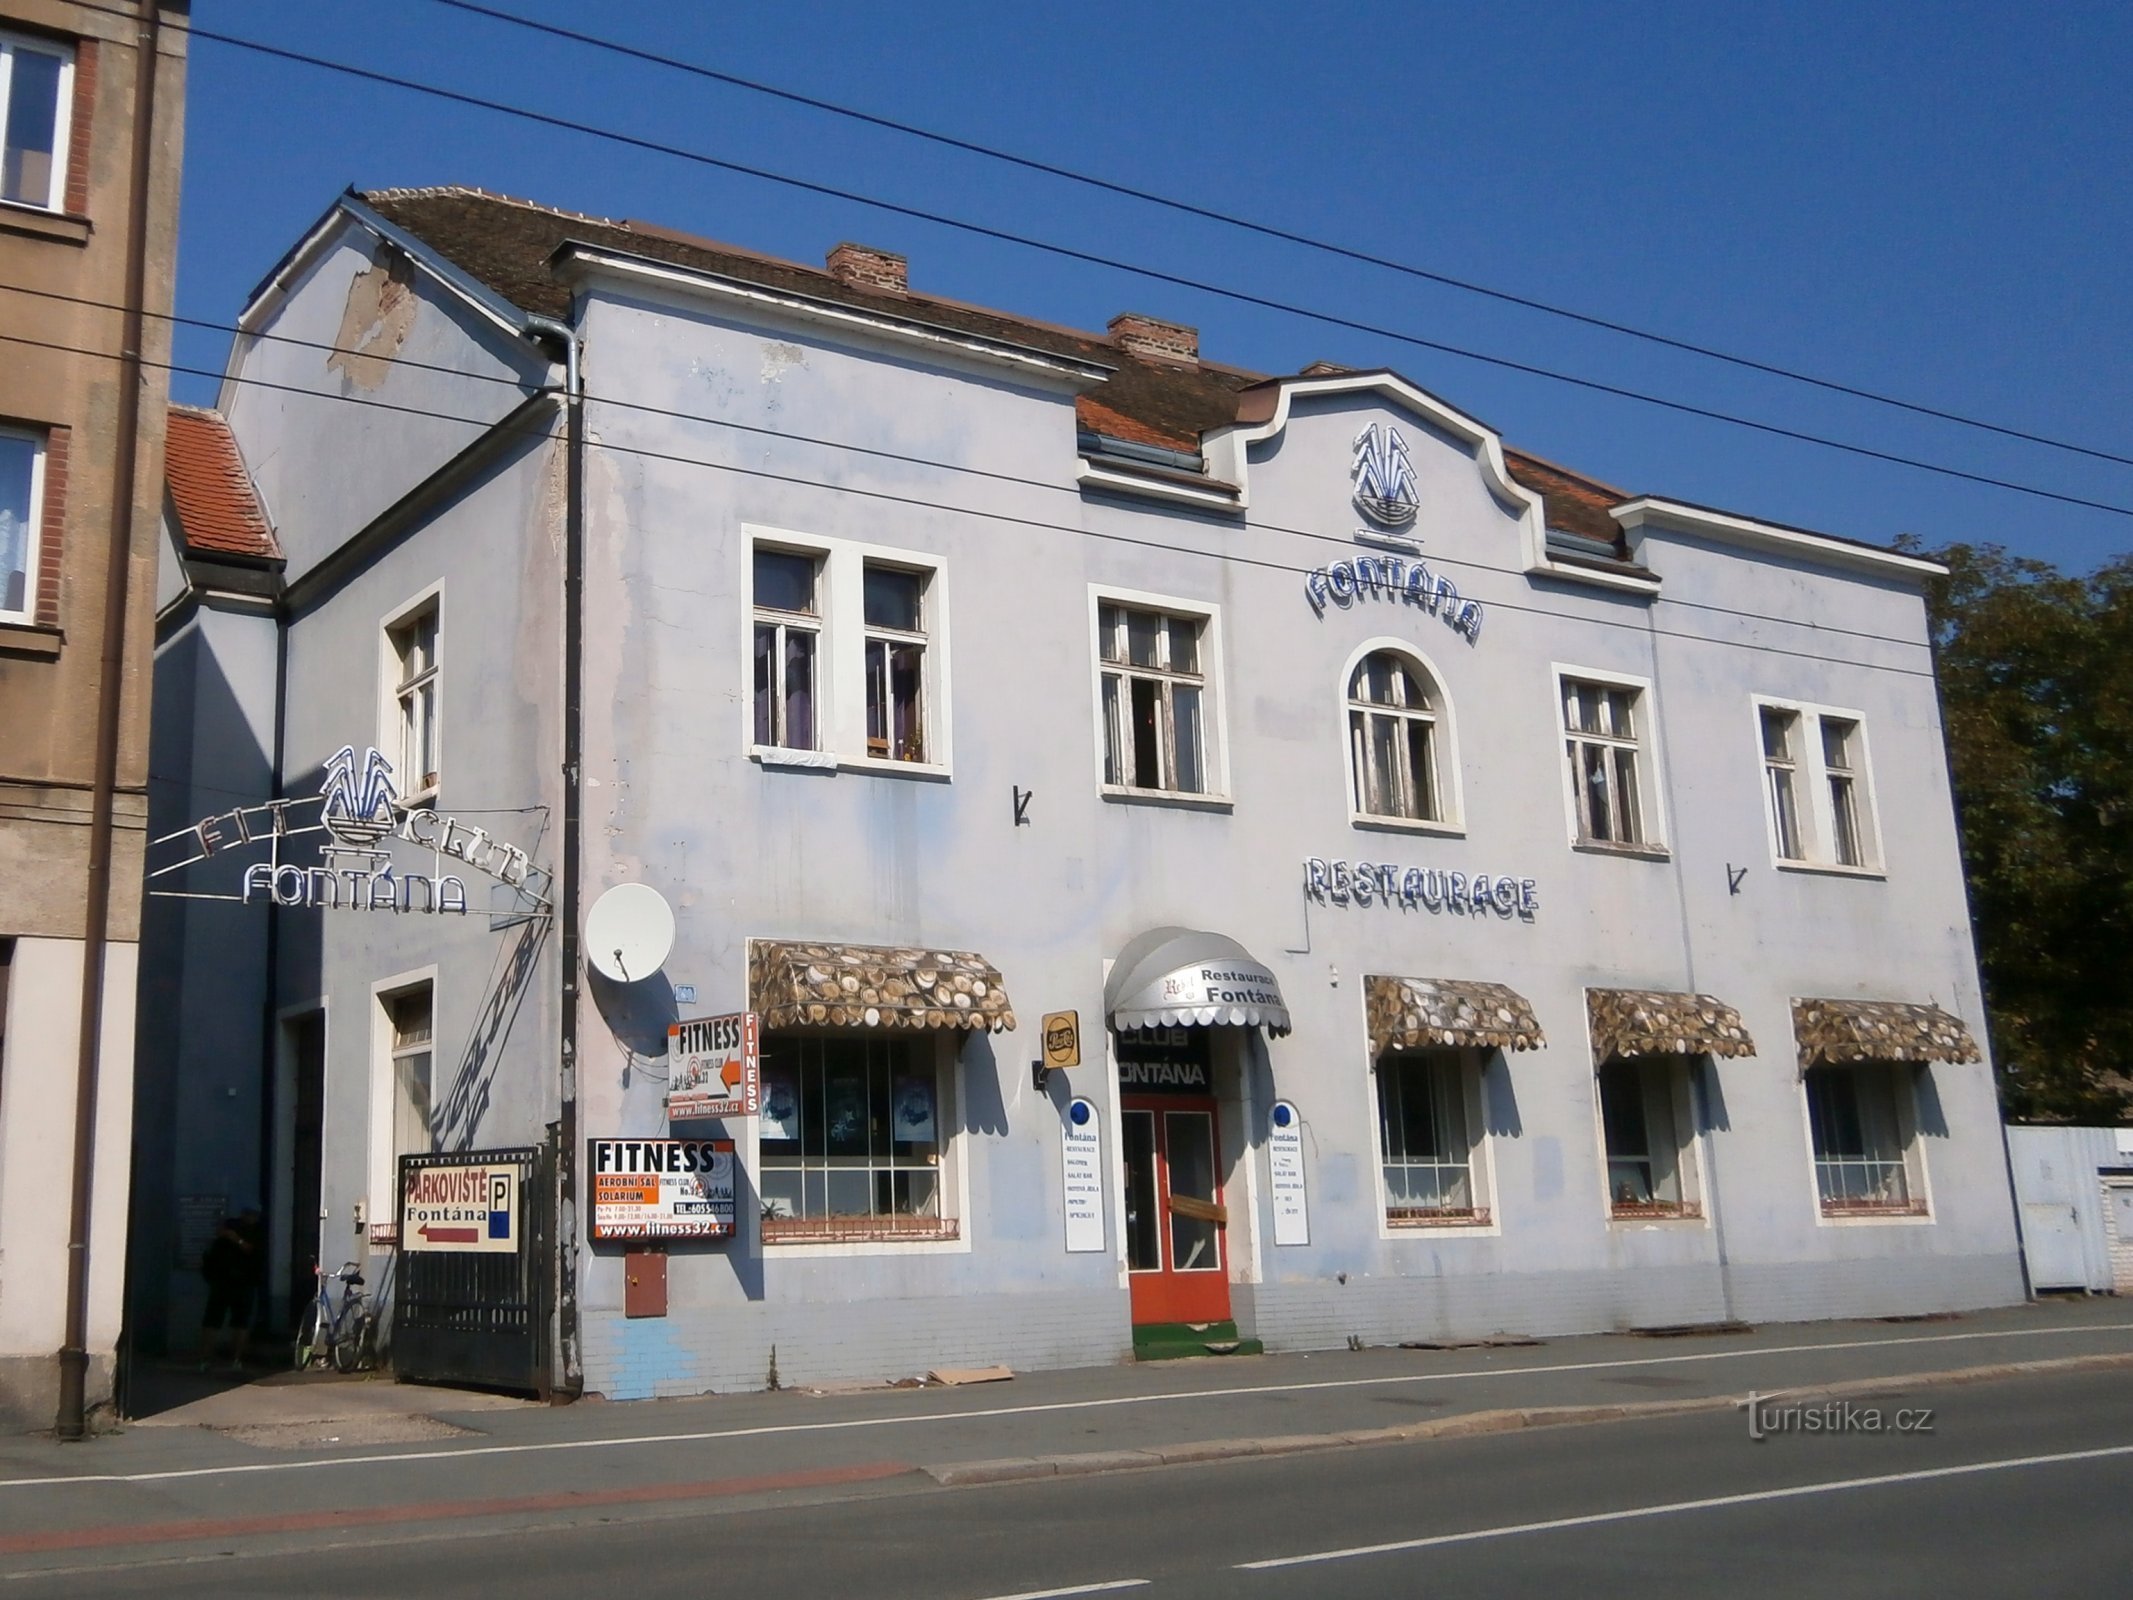 Restaurant Fontana (Hradec Králové, 17.9.2014/XNUMX/XNUMX)